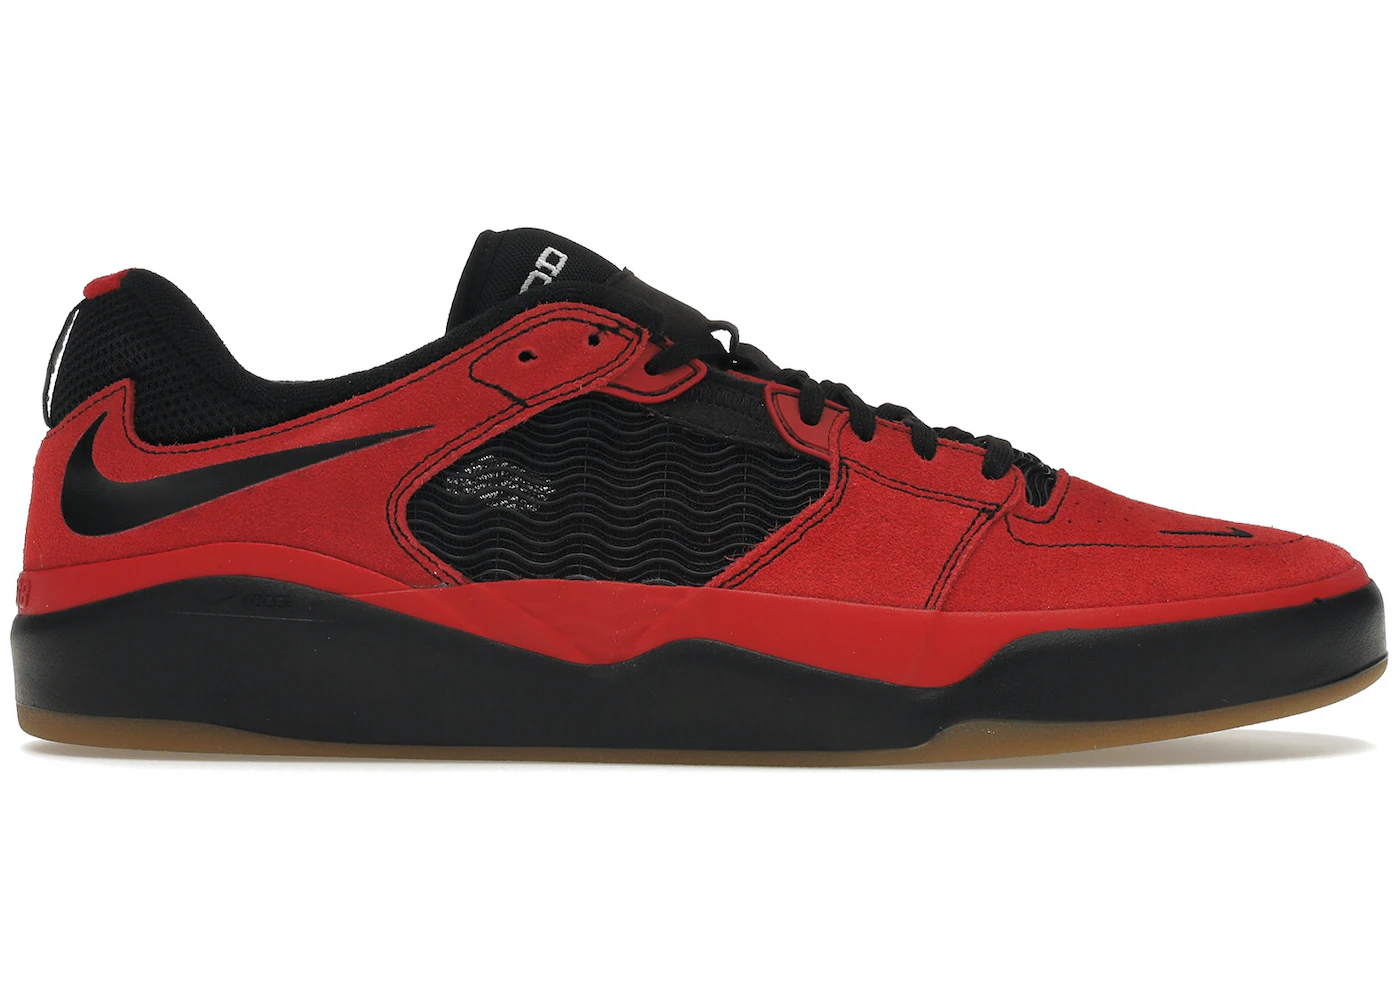 Nike SB Ishod Wair Varsity Red Black Gum - DC7232-600 - US